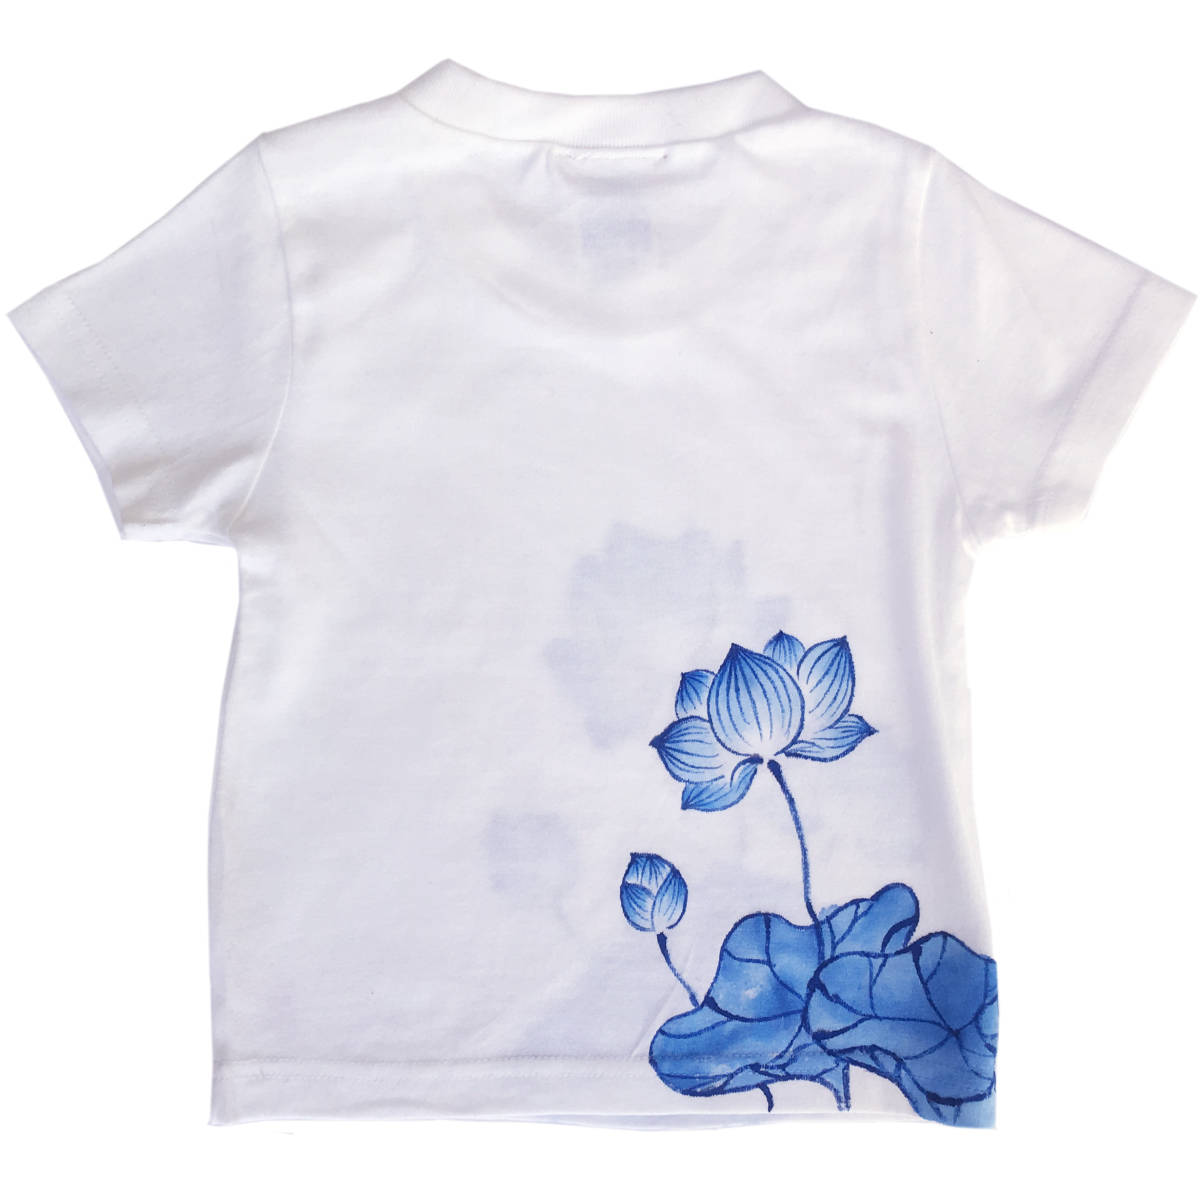 キッズ Tシャツ 130サイズ ホワイト 蓮柄Tシャツ 手描きで描いた蓮の花柄Tシャツ 半袖 和柄 和風 レトロ ハンドメイド